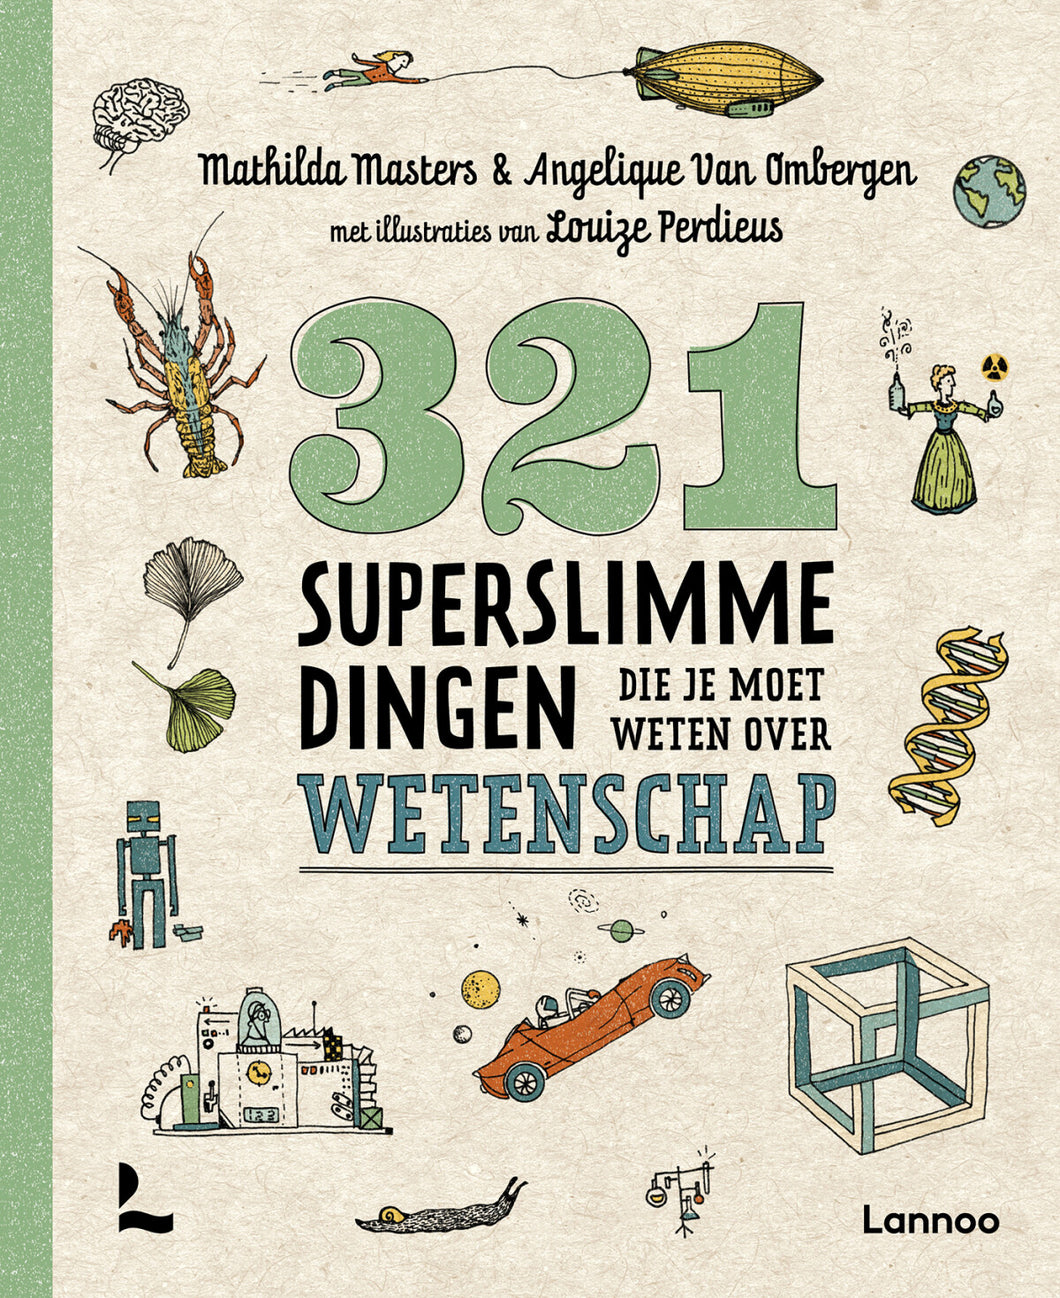 321 Superslimme dingen die je moet weten over wetenschap - Mathilda Masters